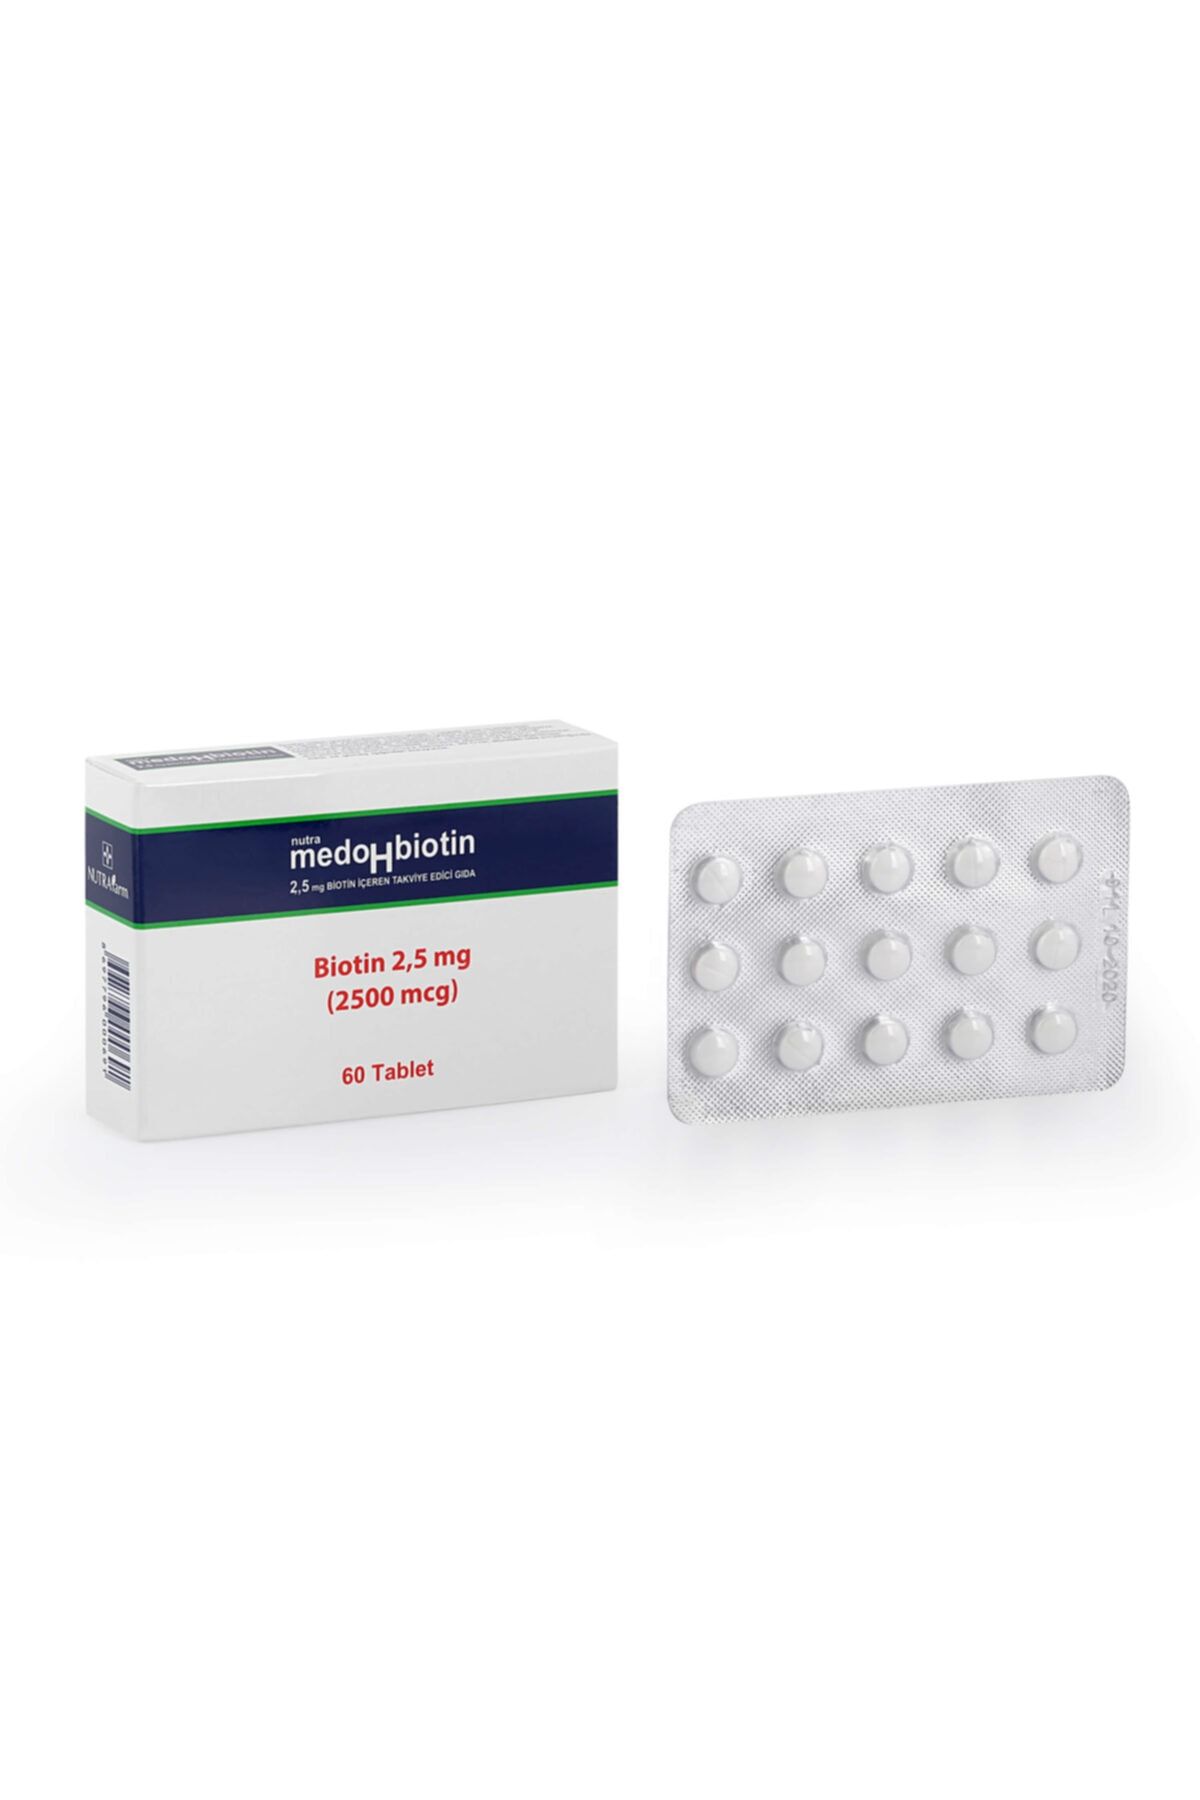 Dermoskin Medohbiotin 2,5 Mg 60 Tablet (Saç, Cilt ve Tırnak Güçlendirici Vitamin) Biotin Gıda Takviyesi